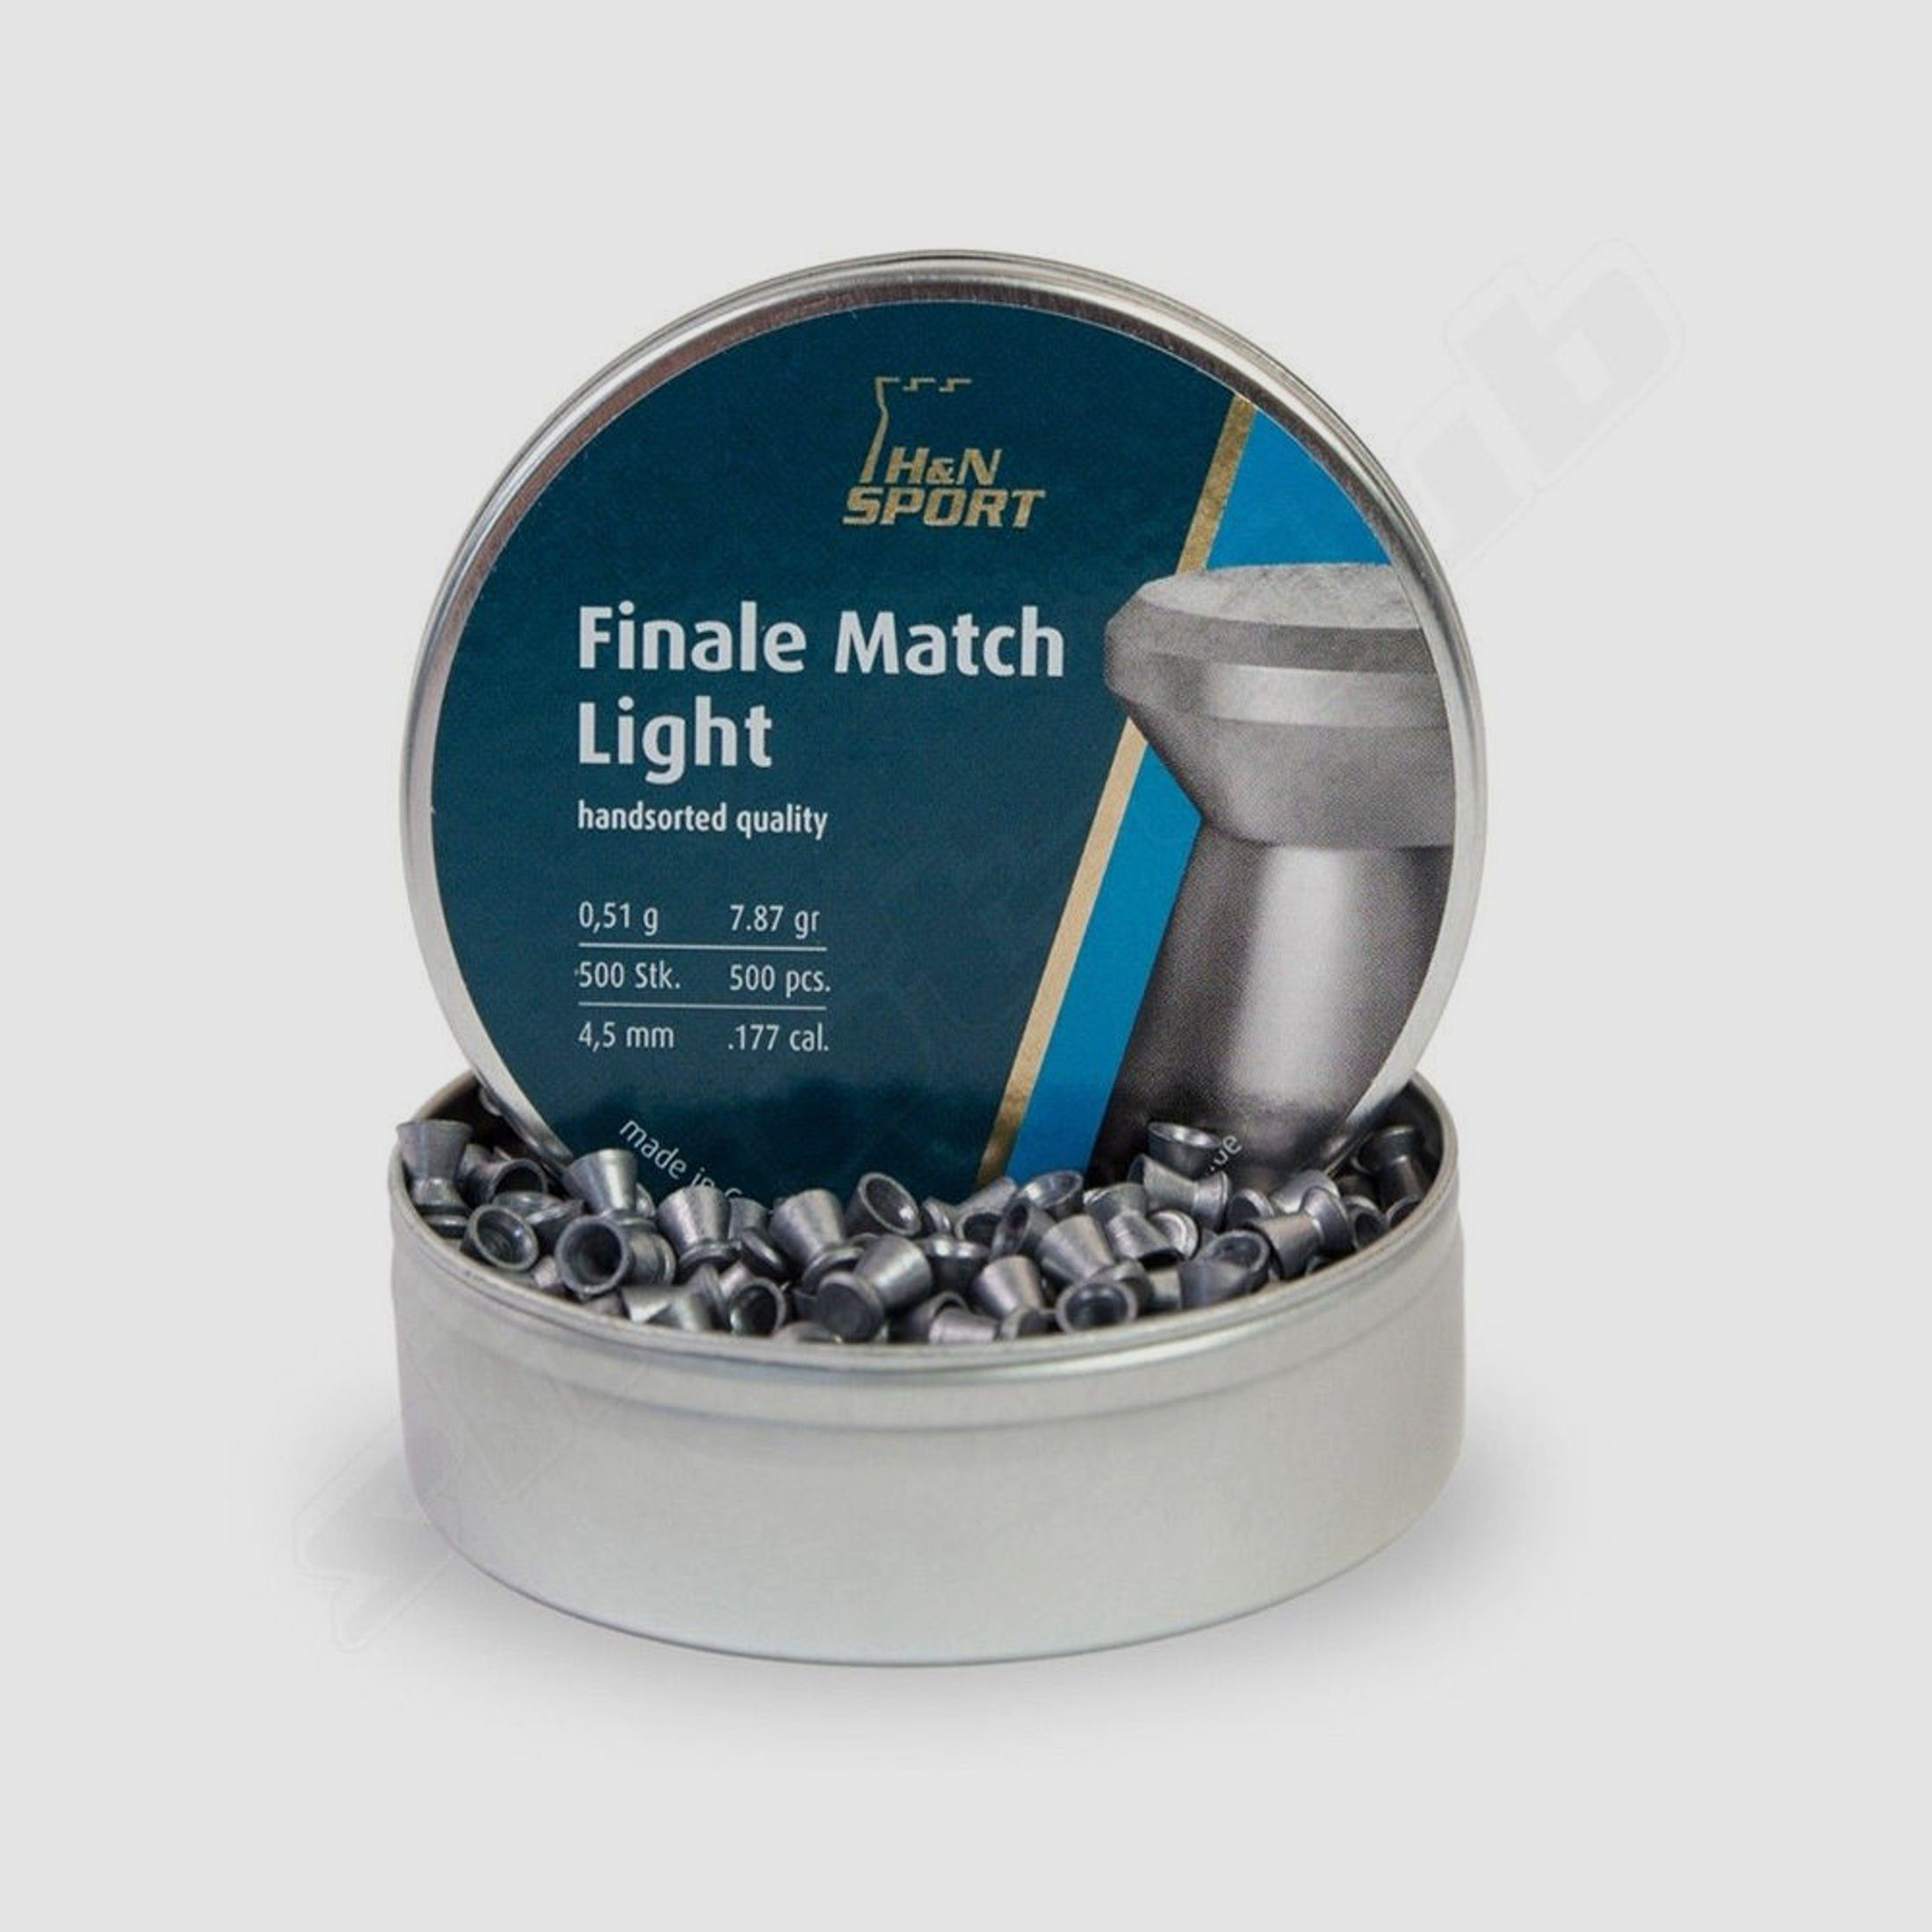 H&N Finale Match Light Diabolos Kaliber 4,5mm 0,51g - 500 Stk.